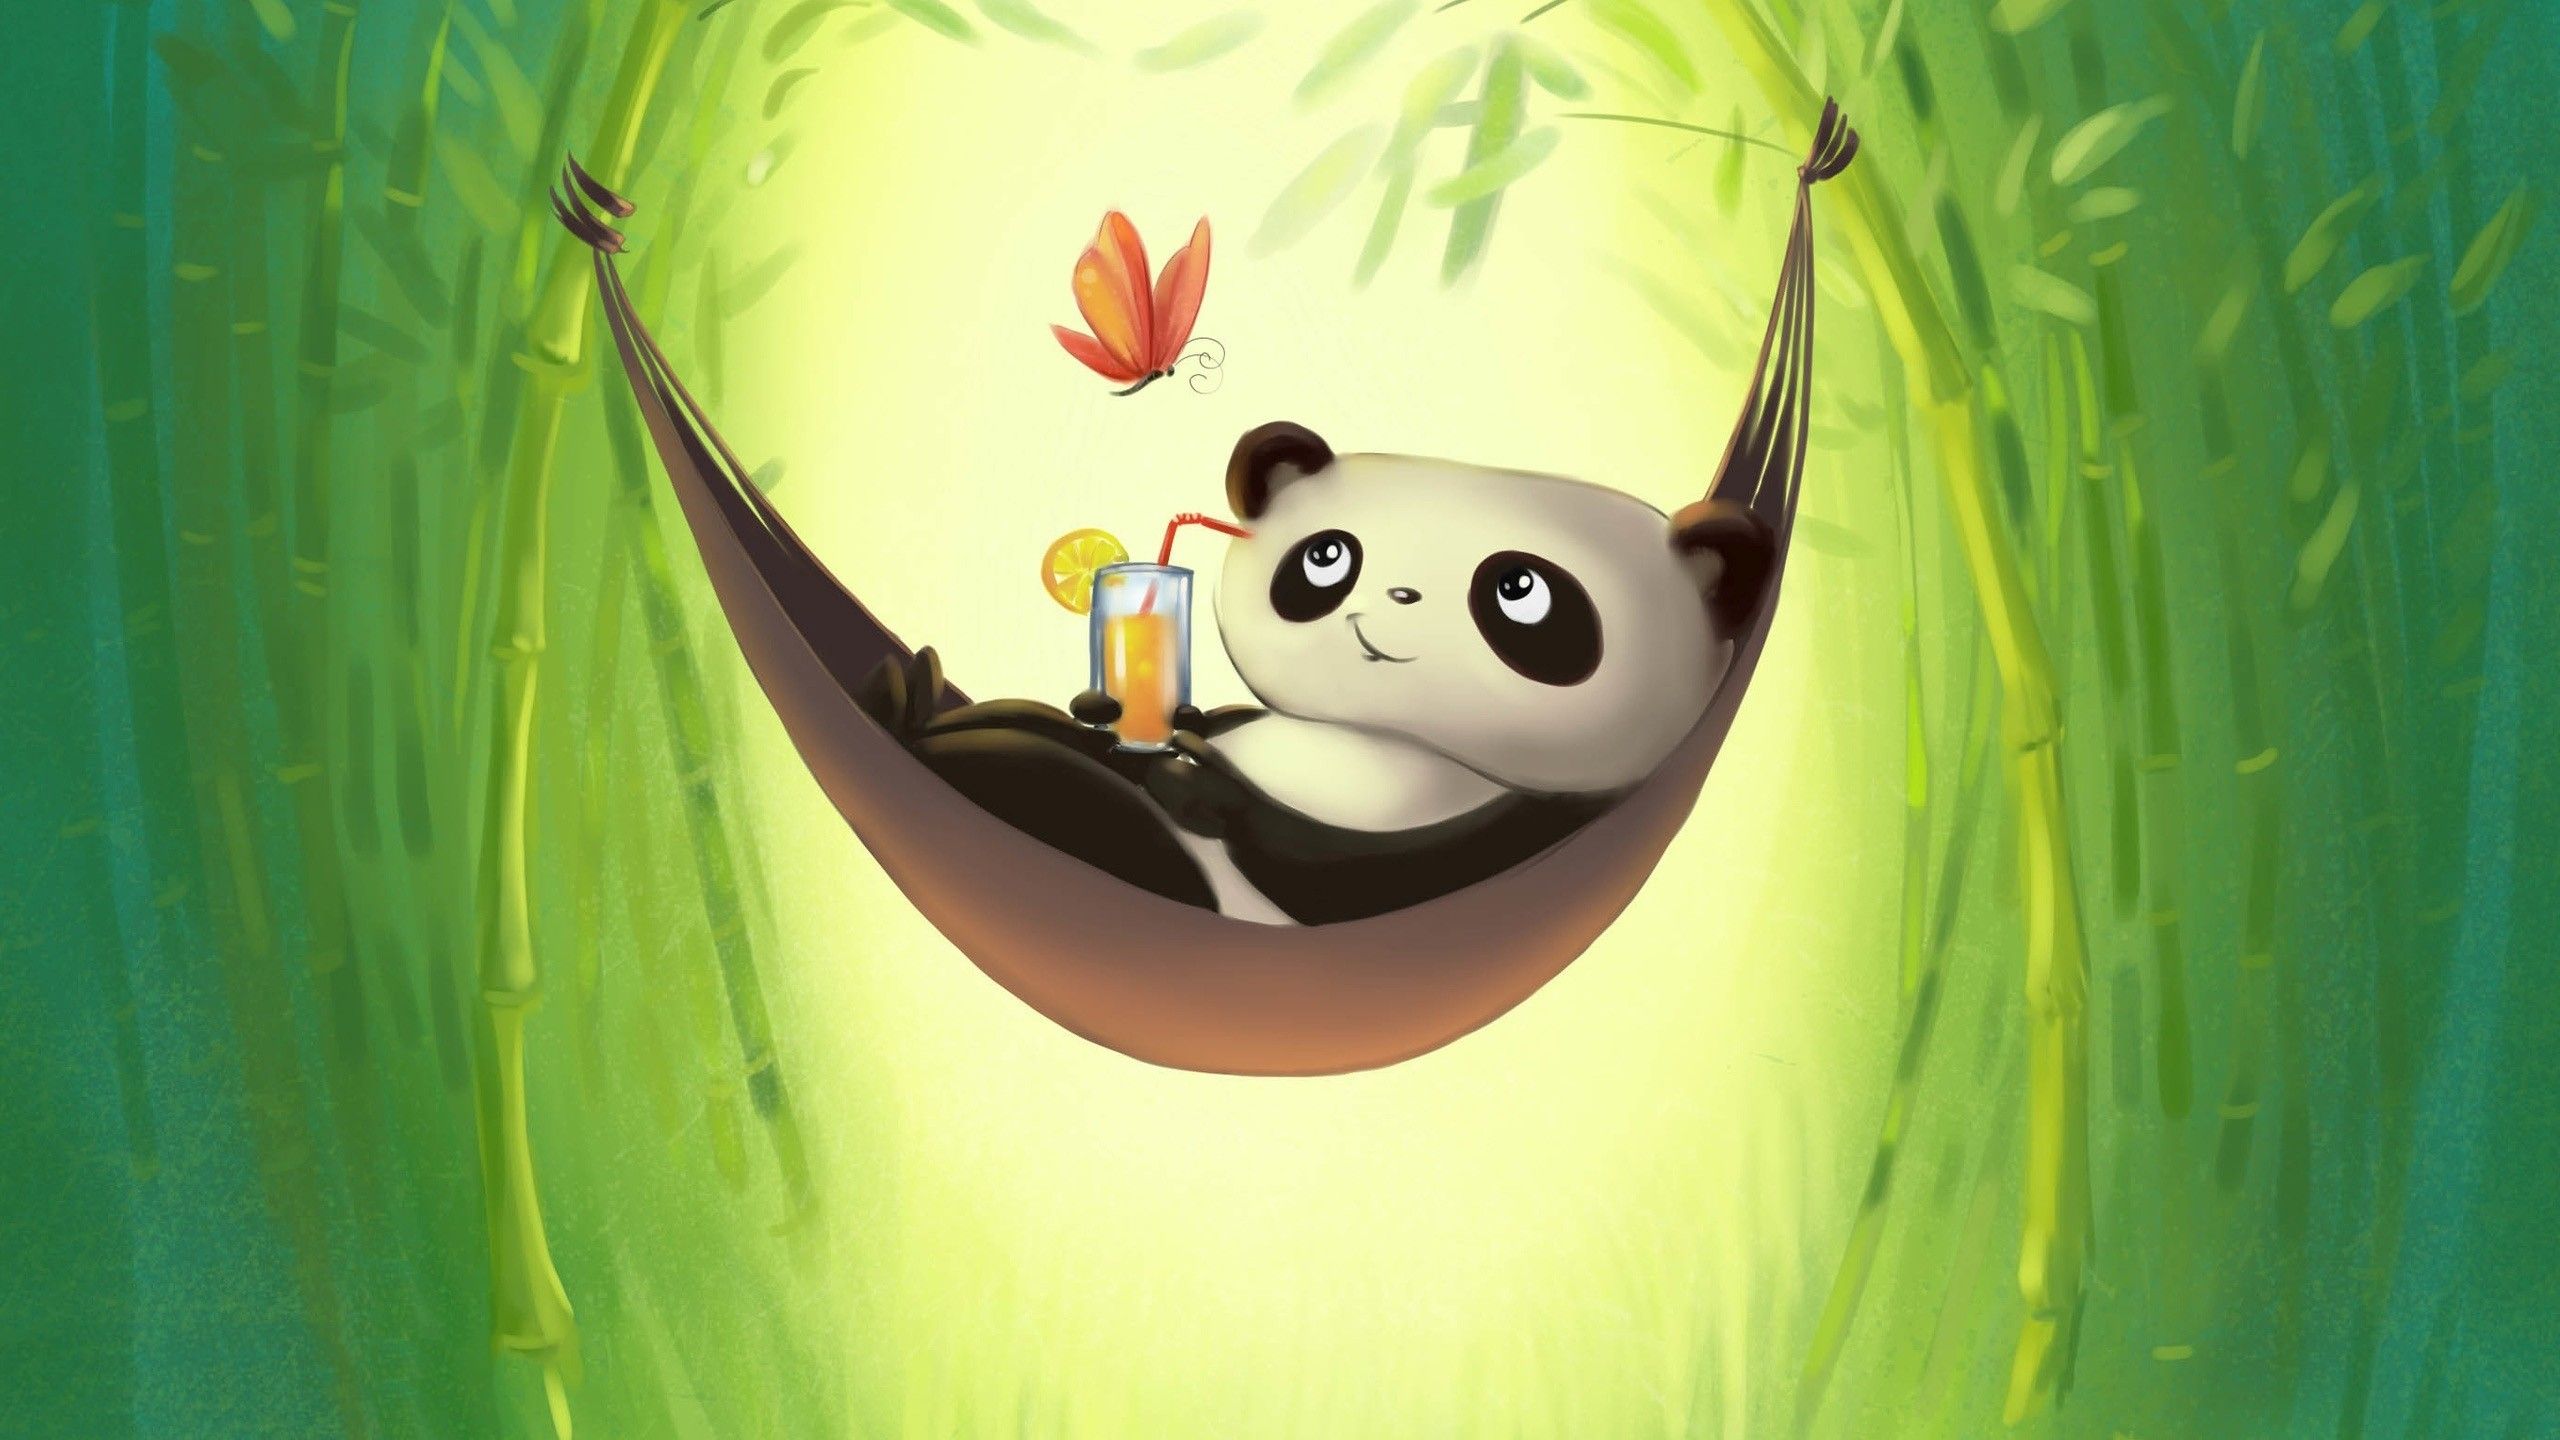 Tìm kiếm hình nền đẹp cho máy tính của bạn? Hãy xem qua những hình nền gấu trúc Panda dễ thương! Với kích thước phù hợp và được thiết kế đặc biệt để phù hợp với màn hình máy tính của bạn, hình nền gấu trúc Panda đáng yêu sẽ khiến bạn cảm thấy hạnh phúc suốt cả ngày dài.